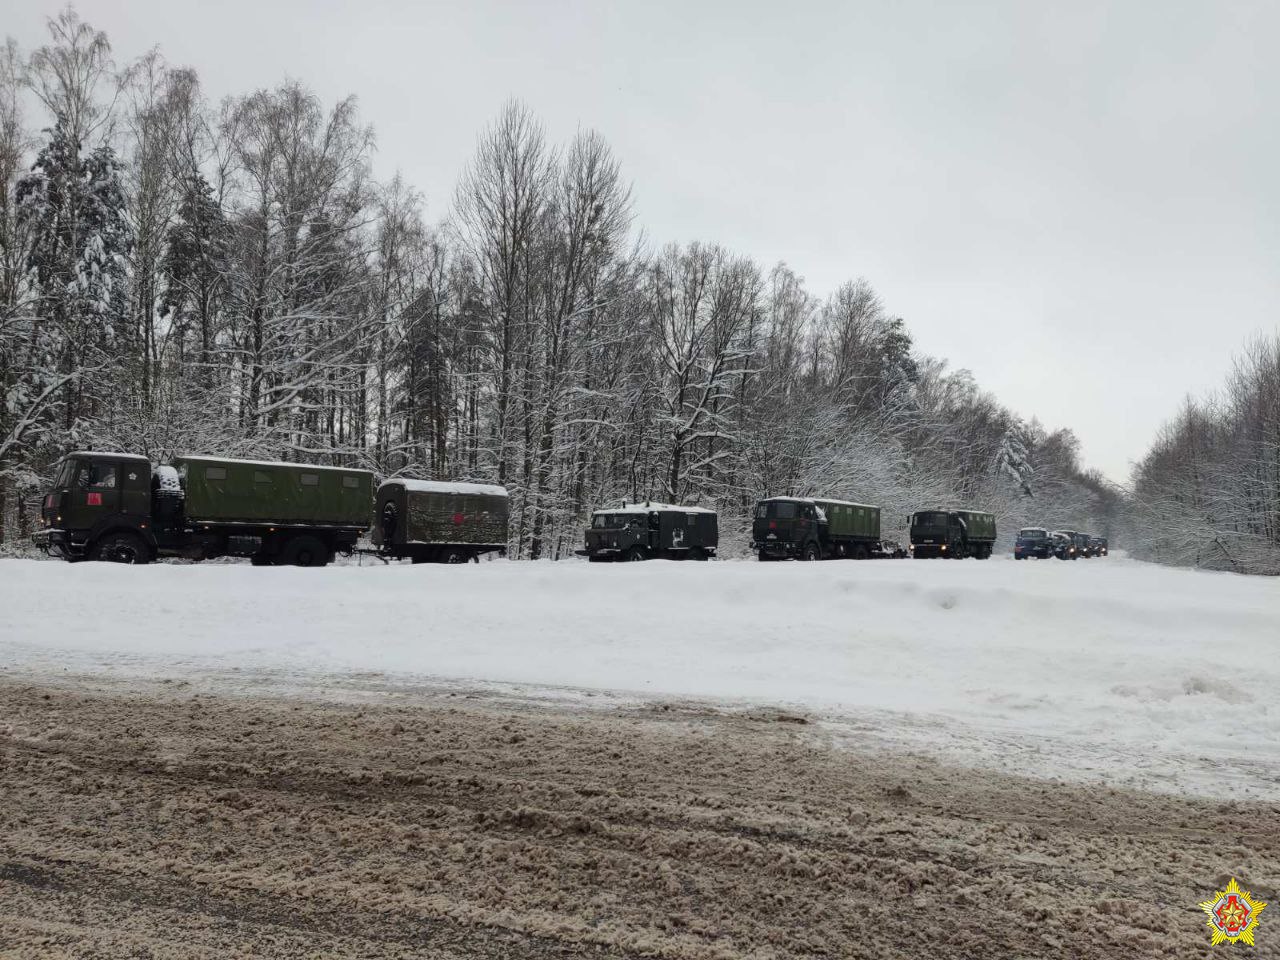 Білоруси повертают частину техніку у зворотному напрямку від кордону з Україною, фото - Міноборони РБ